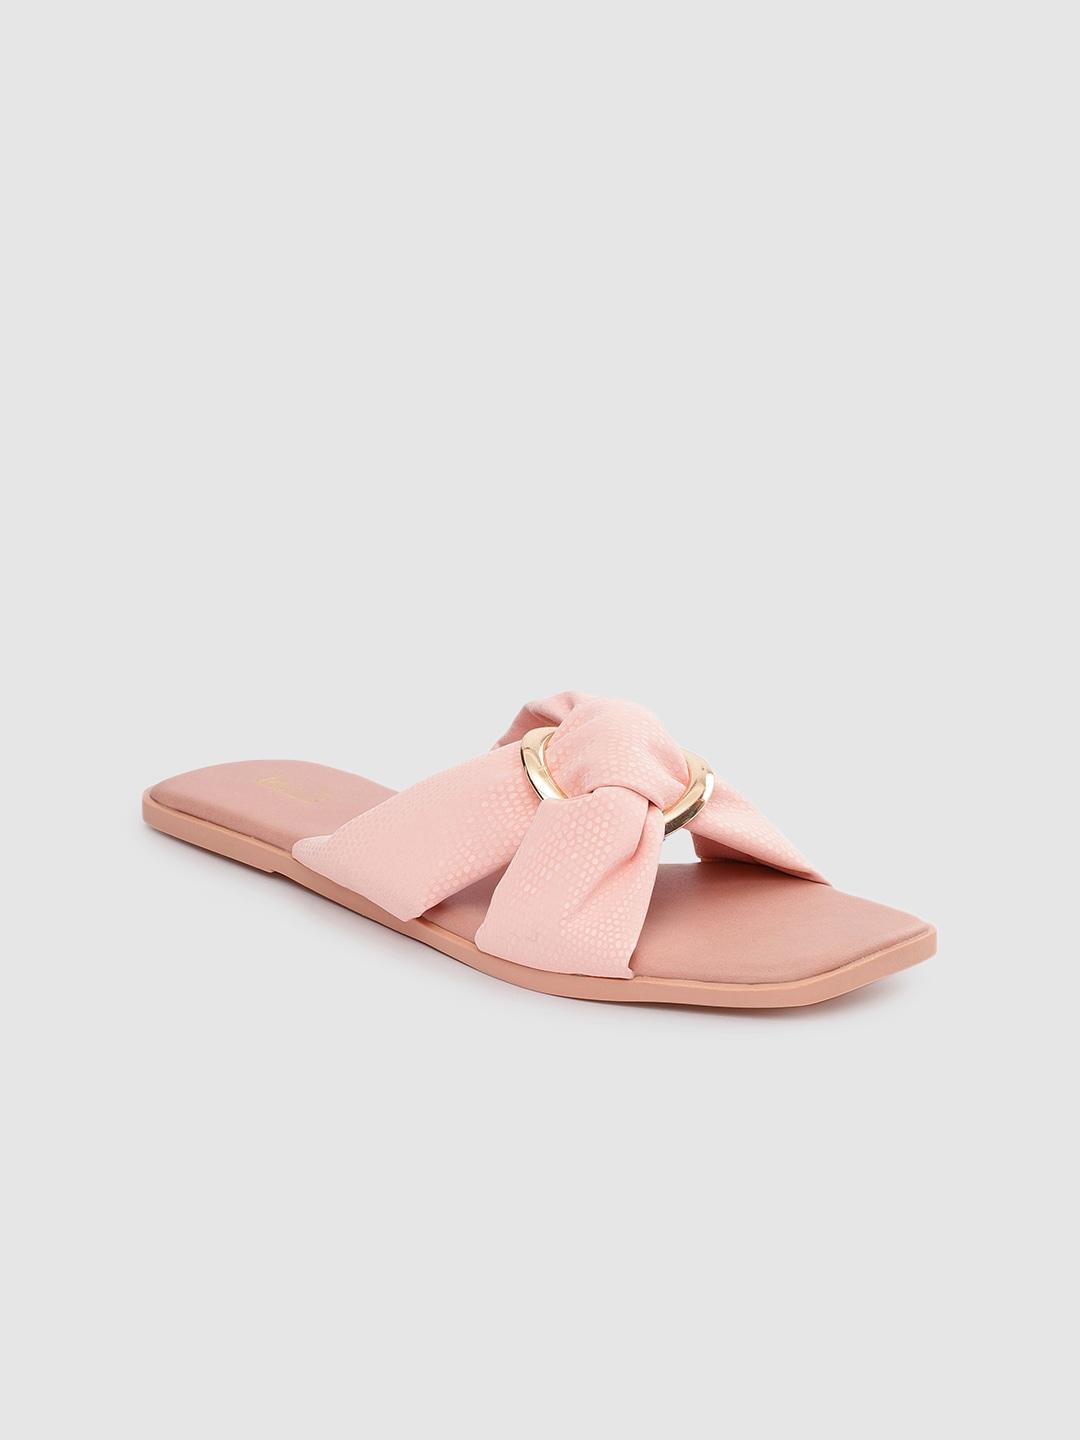 inc-5-women-pink-&-pink-comfort-sandals